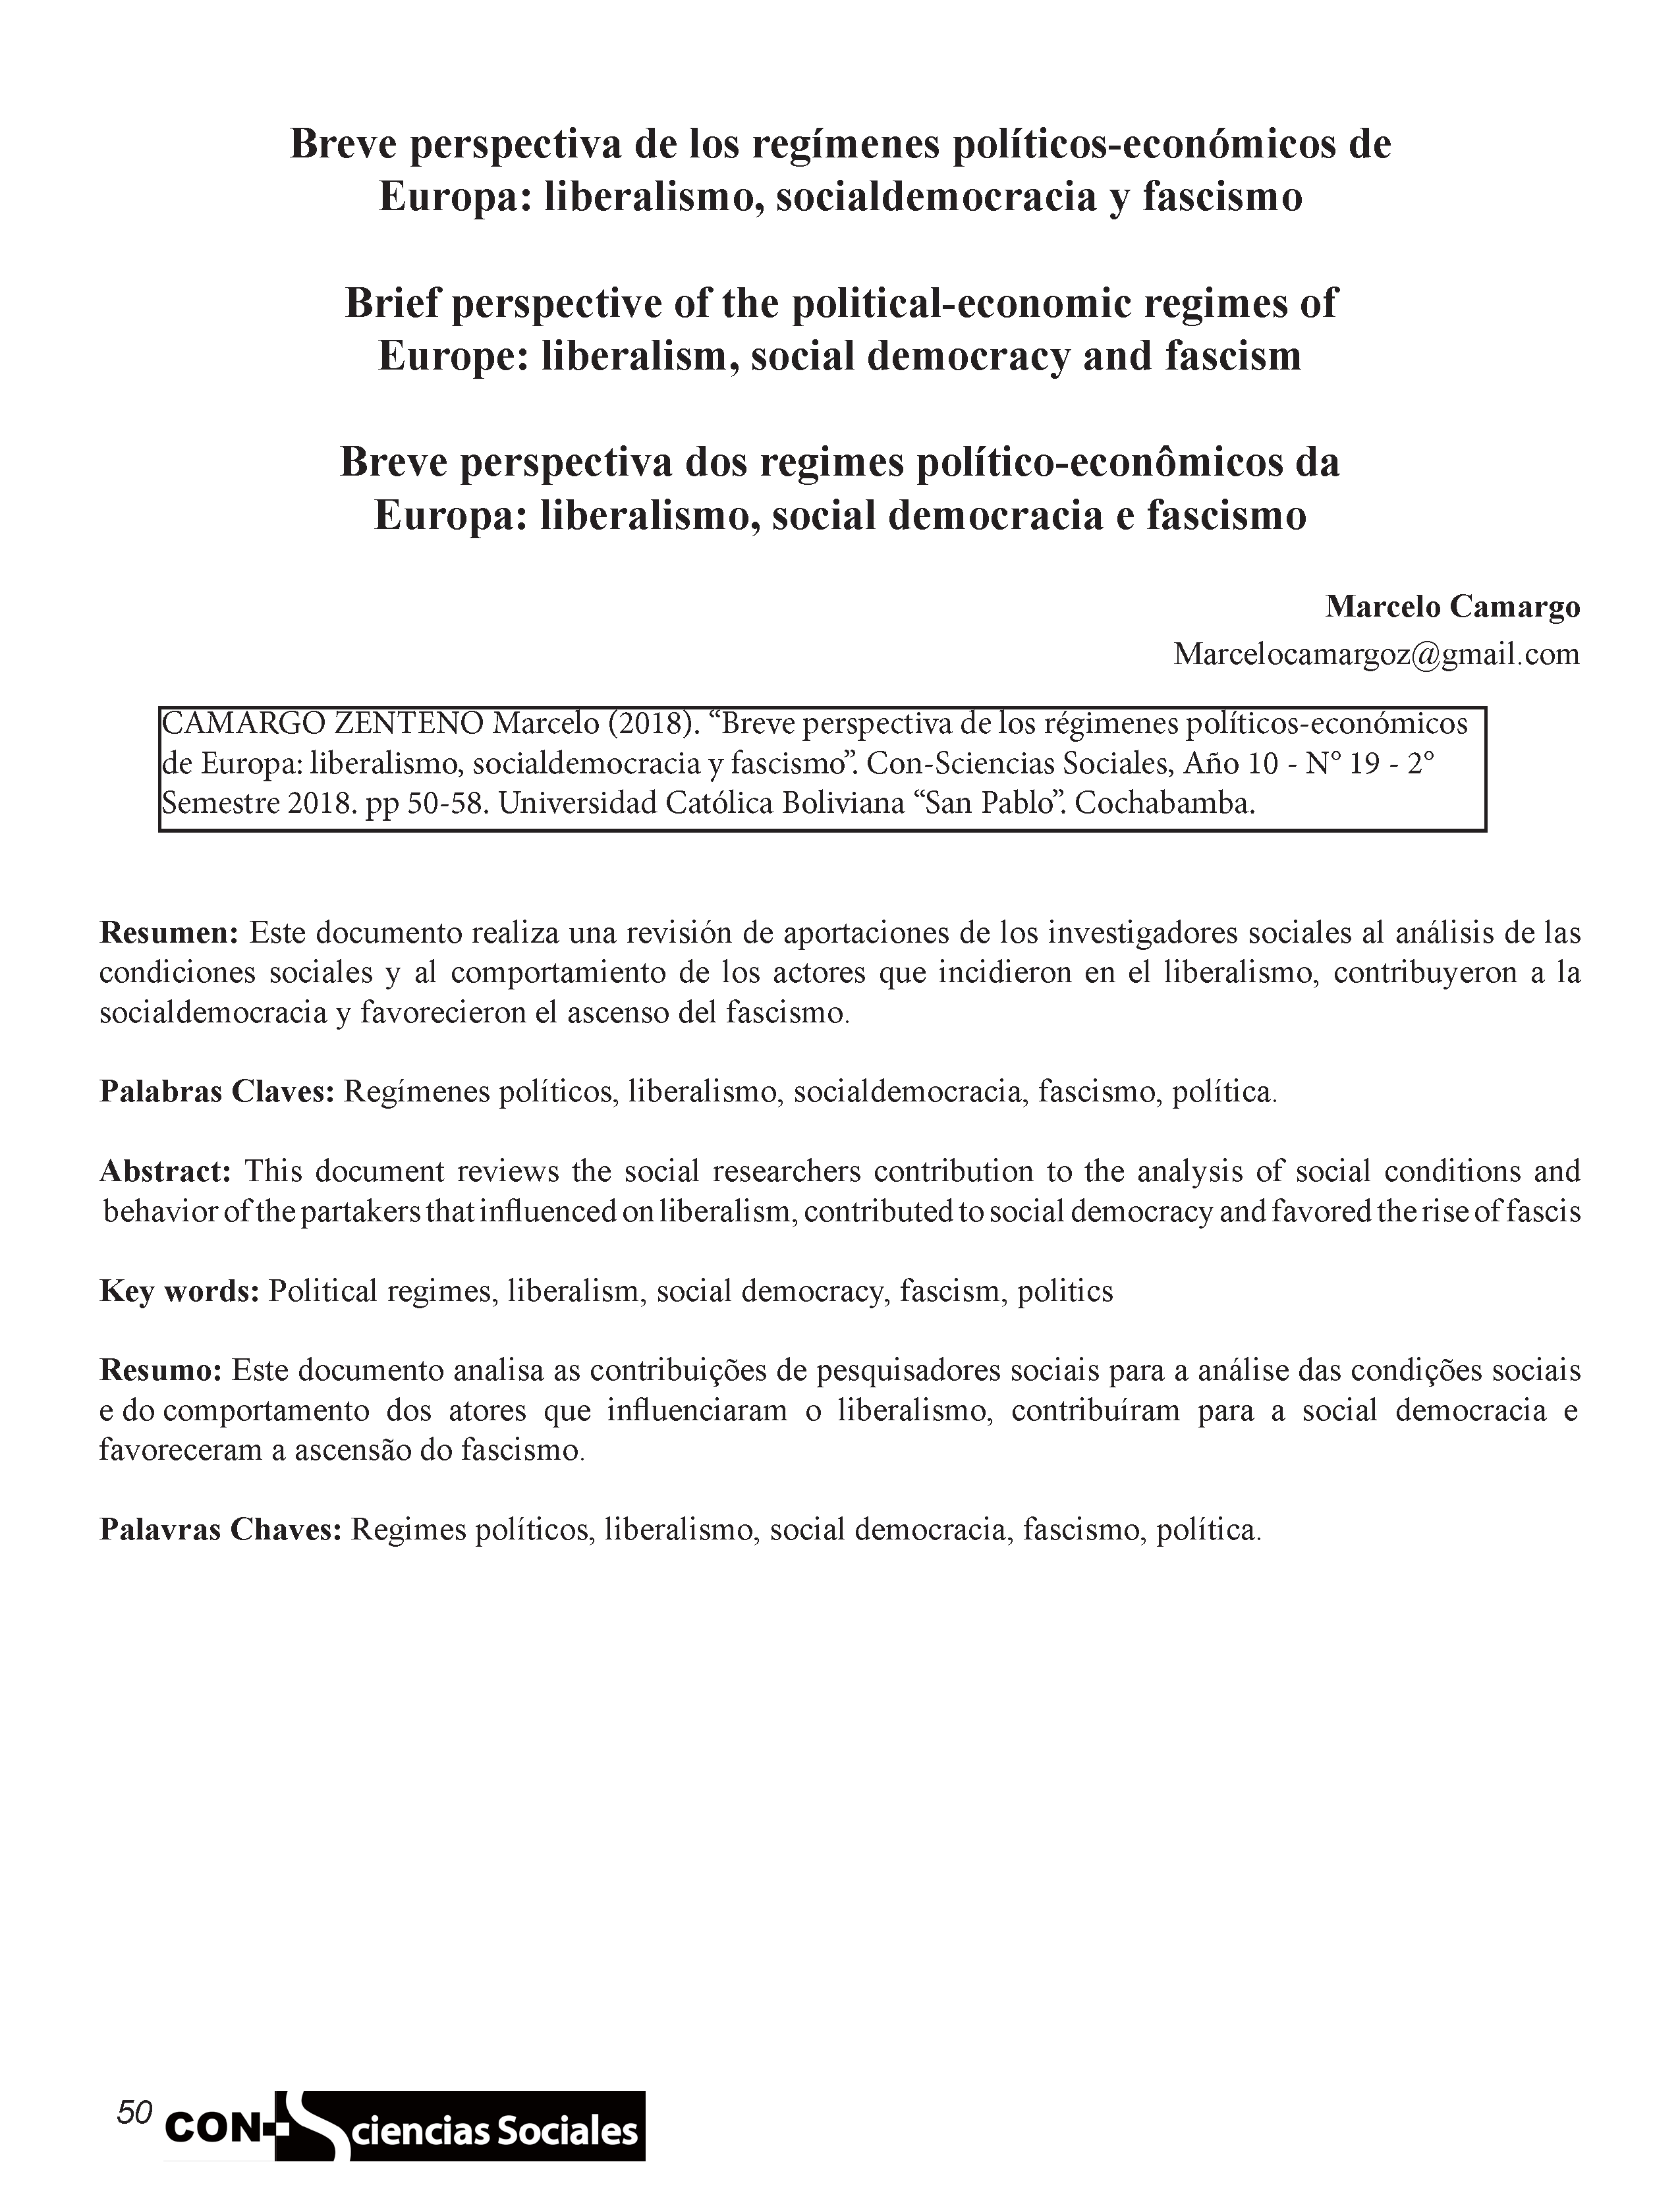 Breve perspectiva de los regímenes políticos-económicos de Europa: liberalismo, socialdemocracia y fascismo